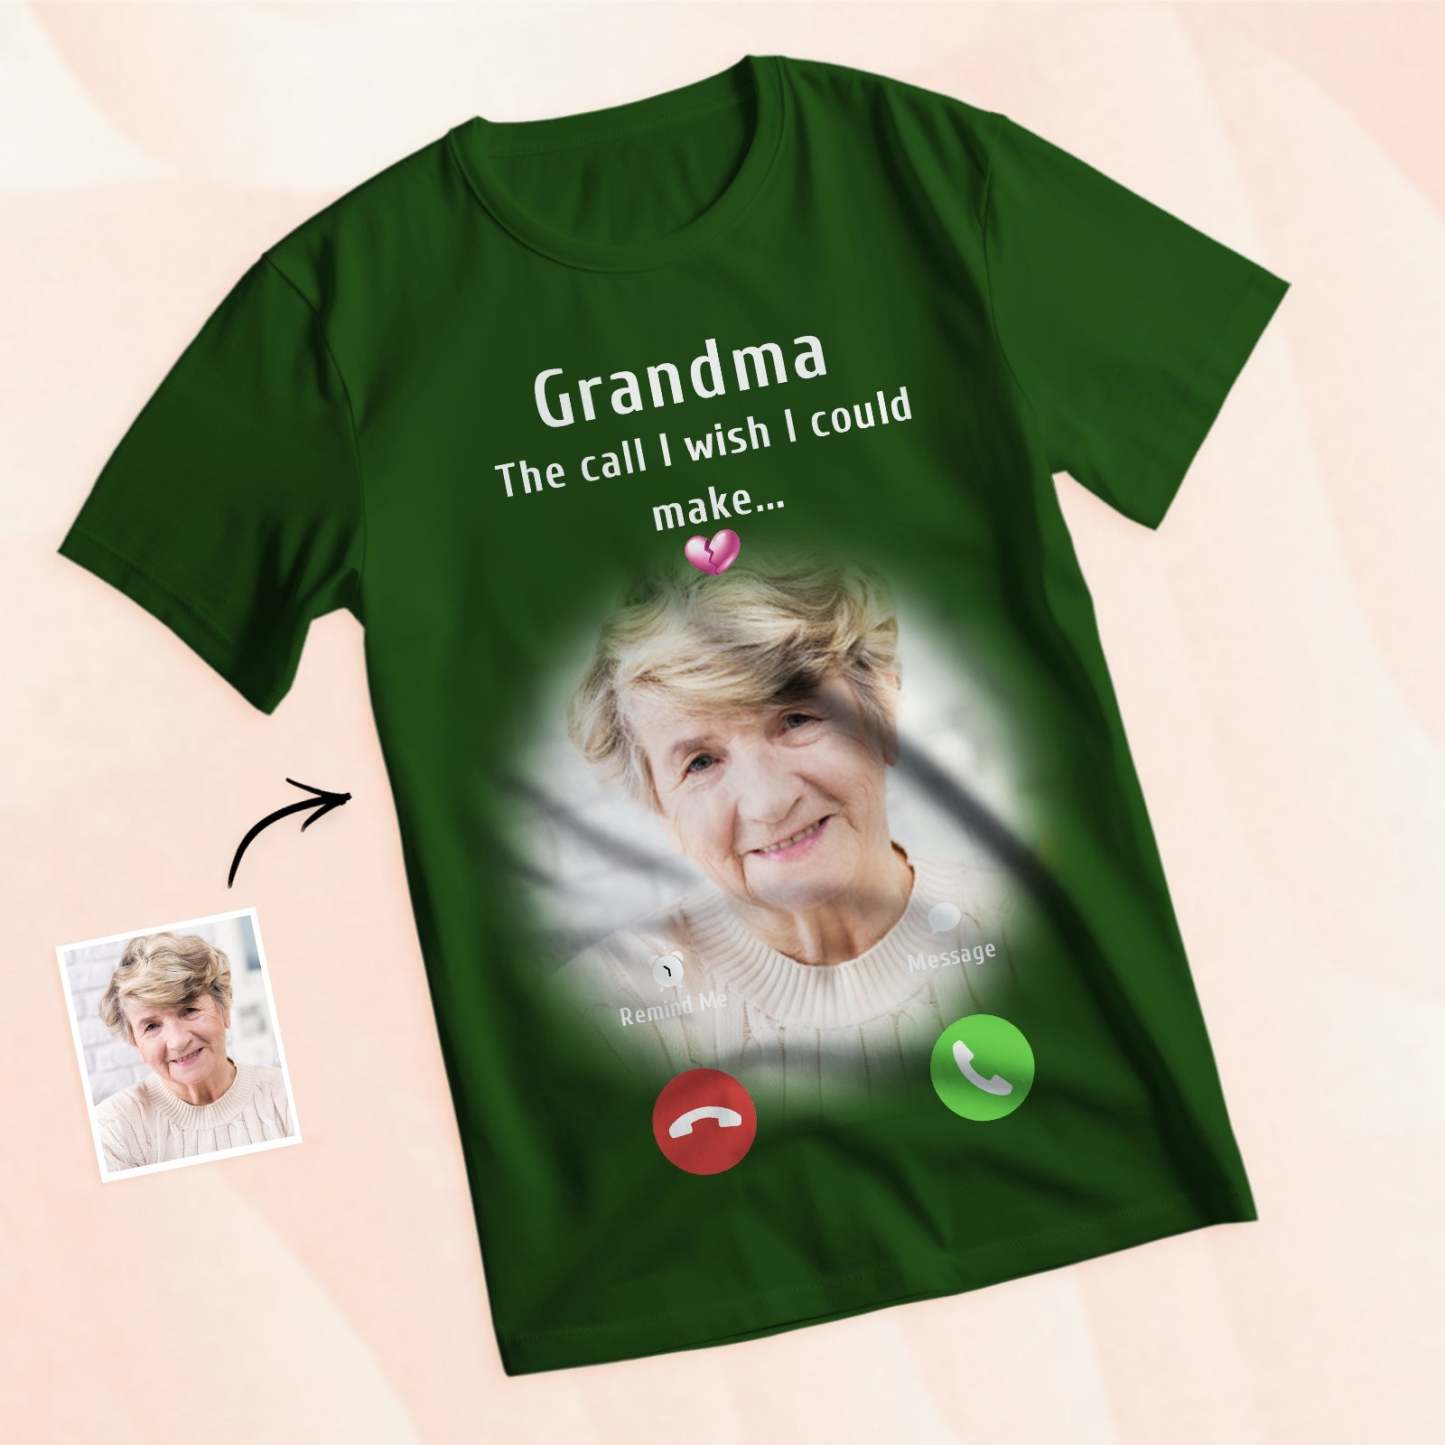 Photo Personnalisée Memorial Mom T-shirt Memorial Gift Idea Chemise Personnalisée L'appel Que J'aimerais Pouvoir Faire - VisageChaussettes